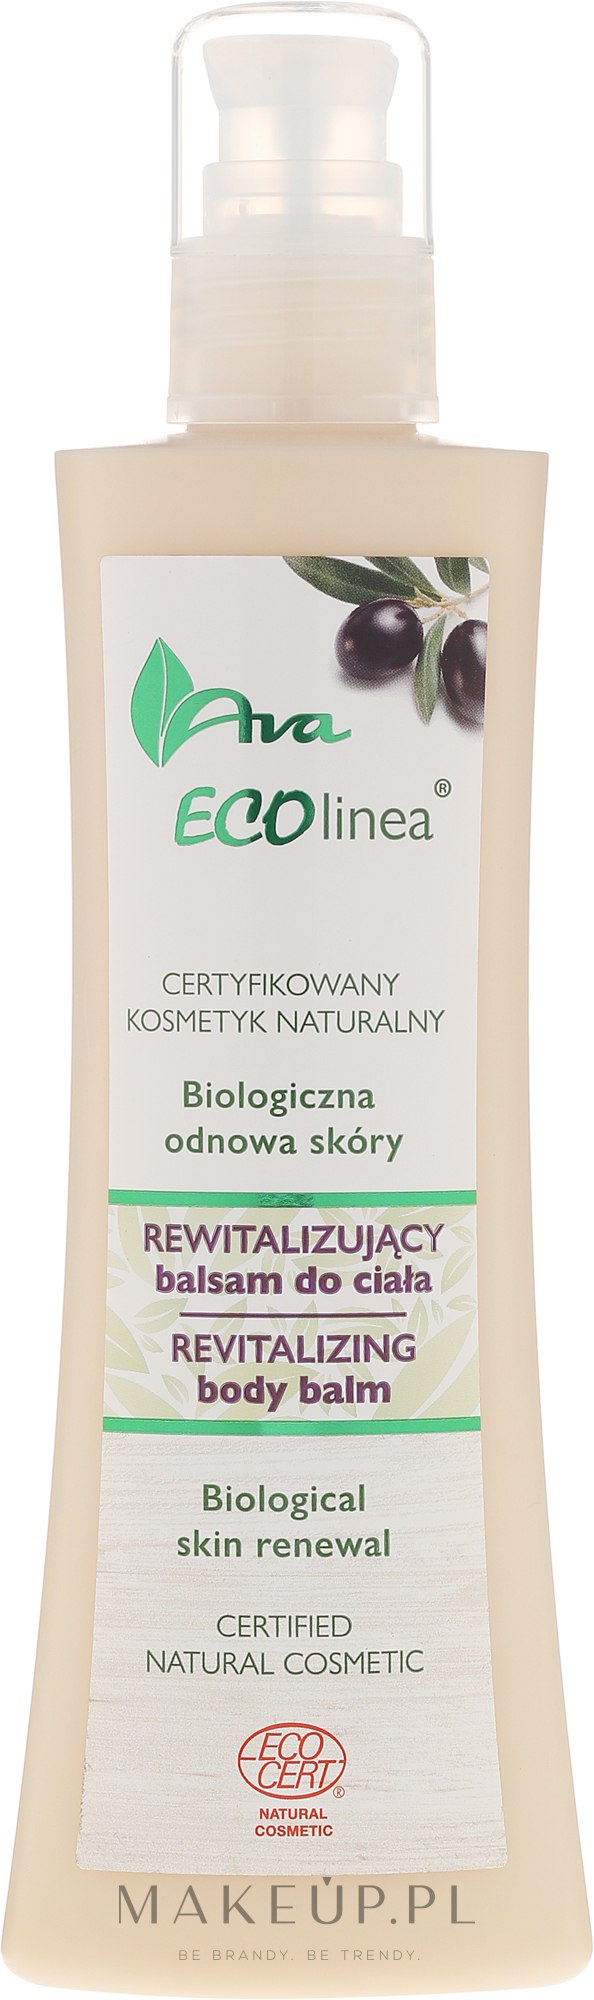 Rewitalizujący balsam do ciała Biologiczna odnowa skóry - AVA Laboratorium Eco Linea — Zdjęcie 200 ml